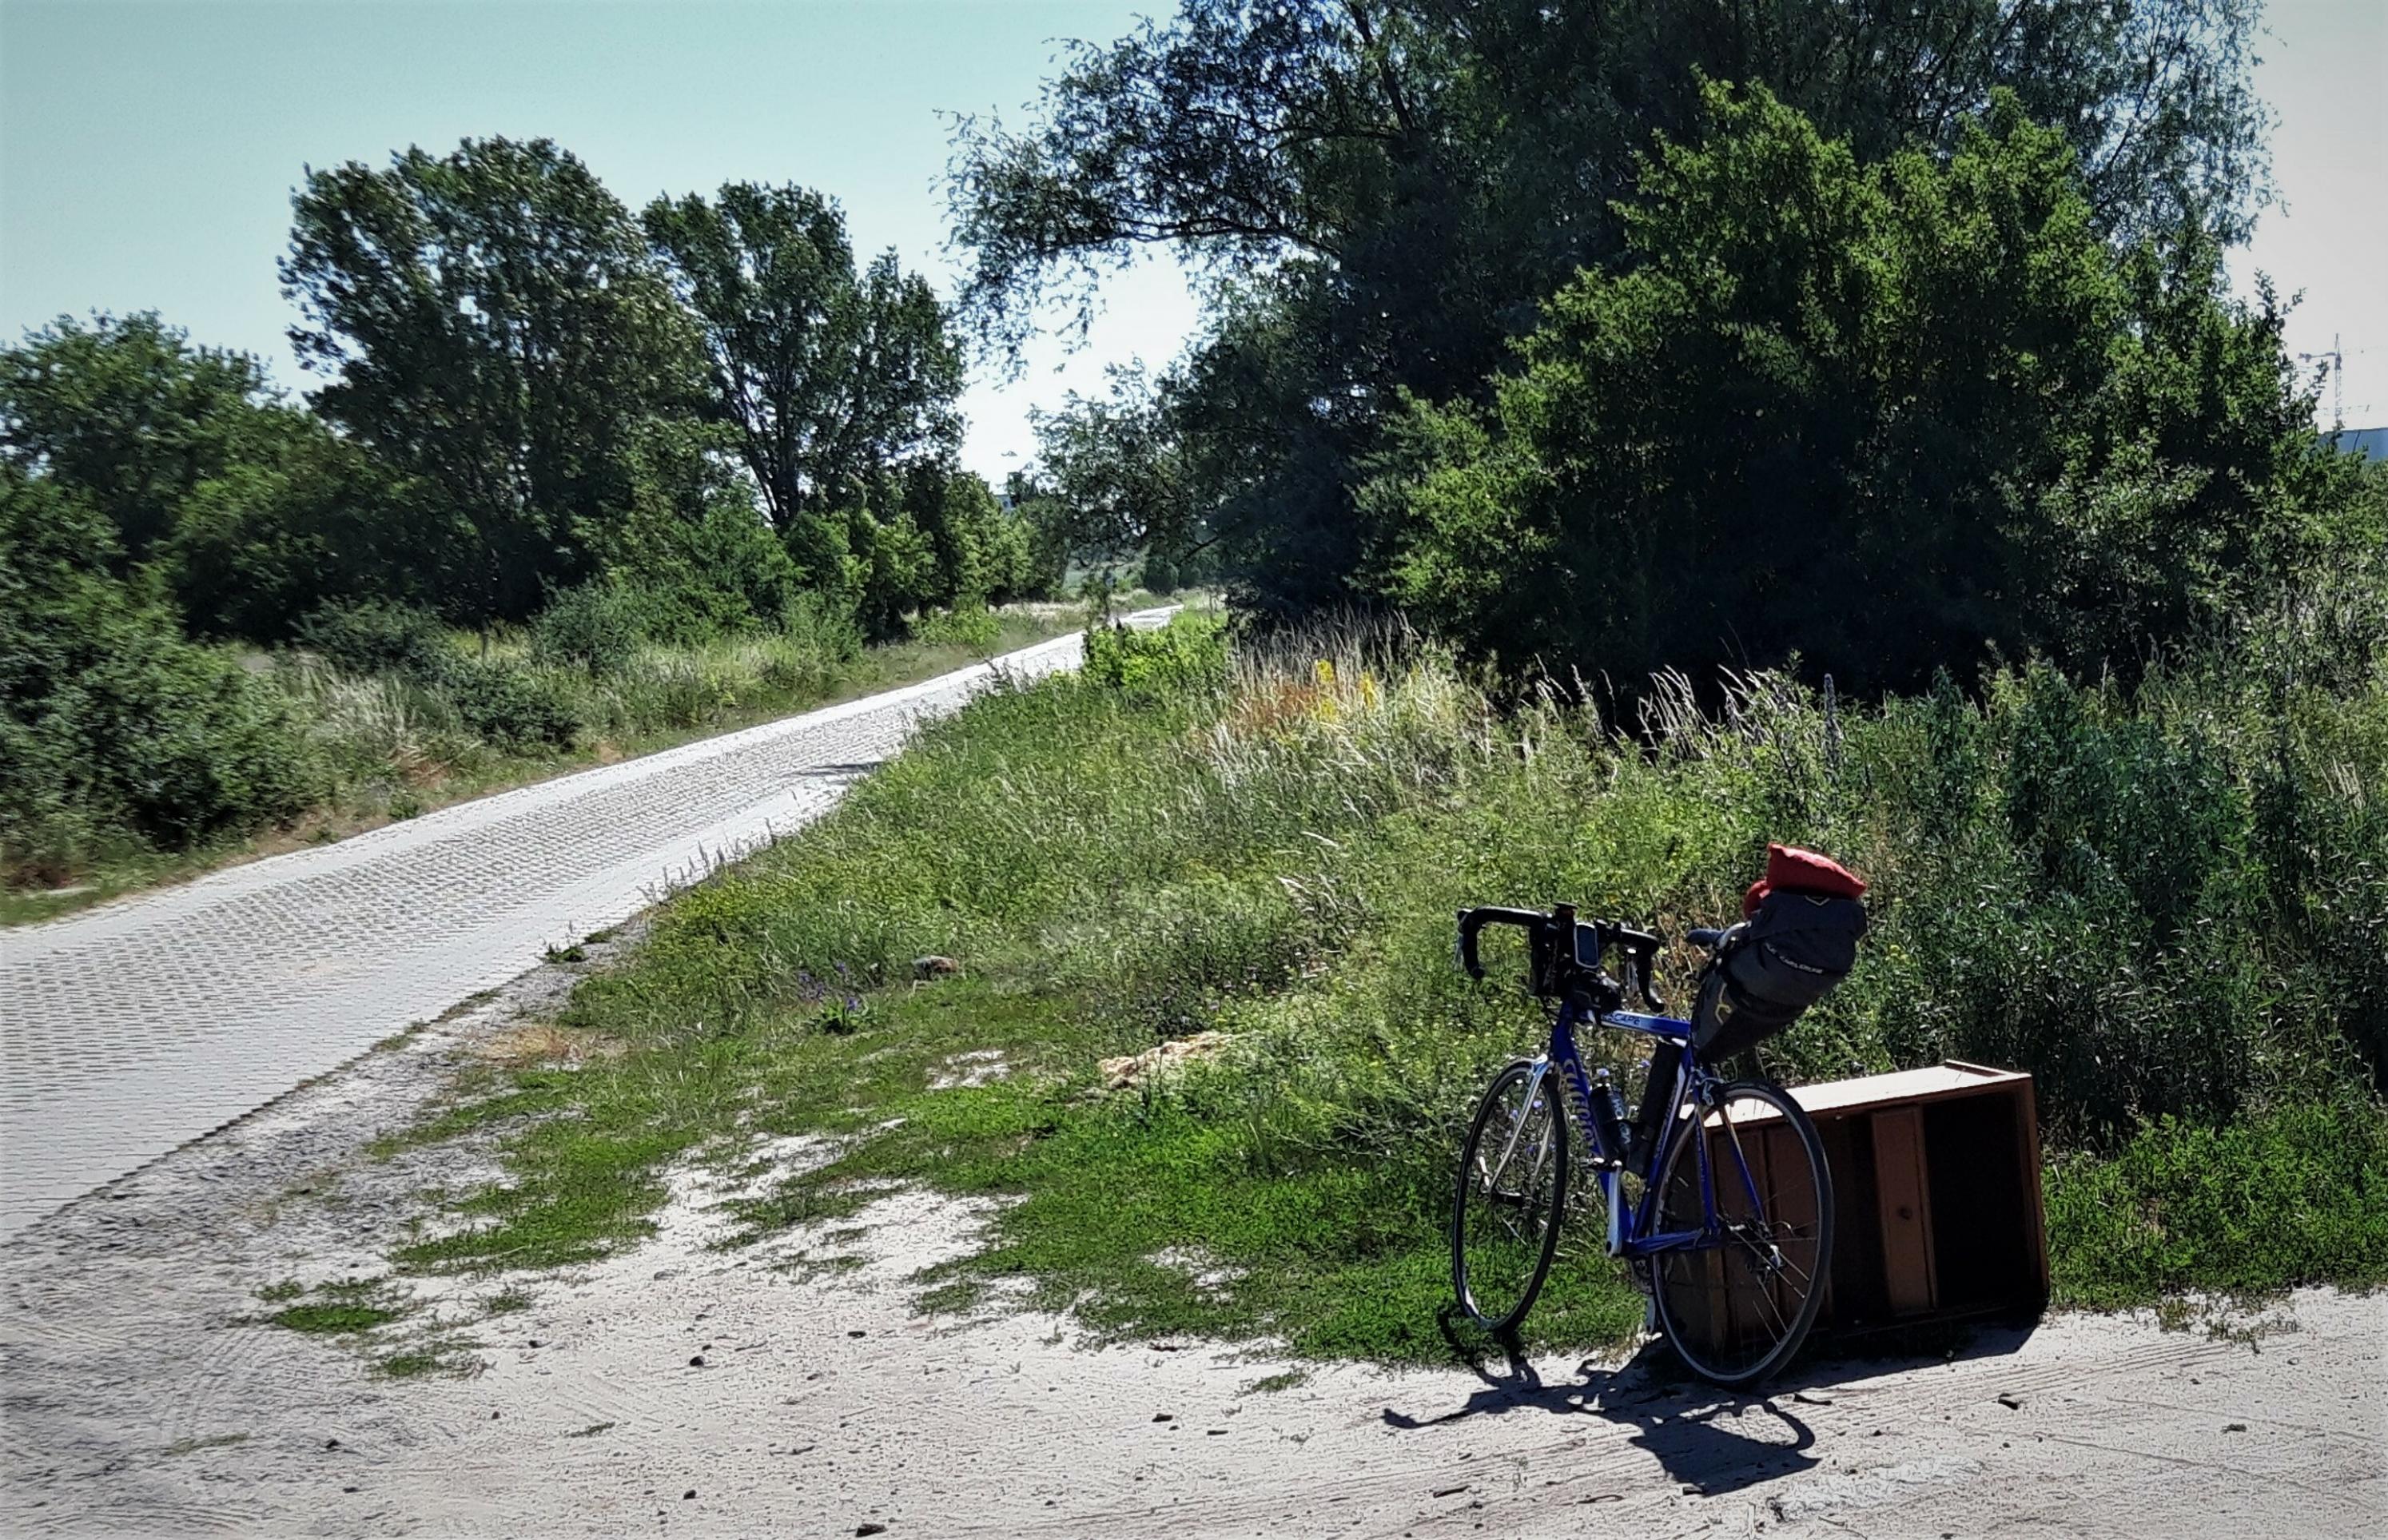 Links ein Kolonnenweg, umrandet von Gebüsch; rechts das Fahrrad, das an einem kaputten, illegal abgelagertem Holzmöbel lehnt.